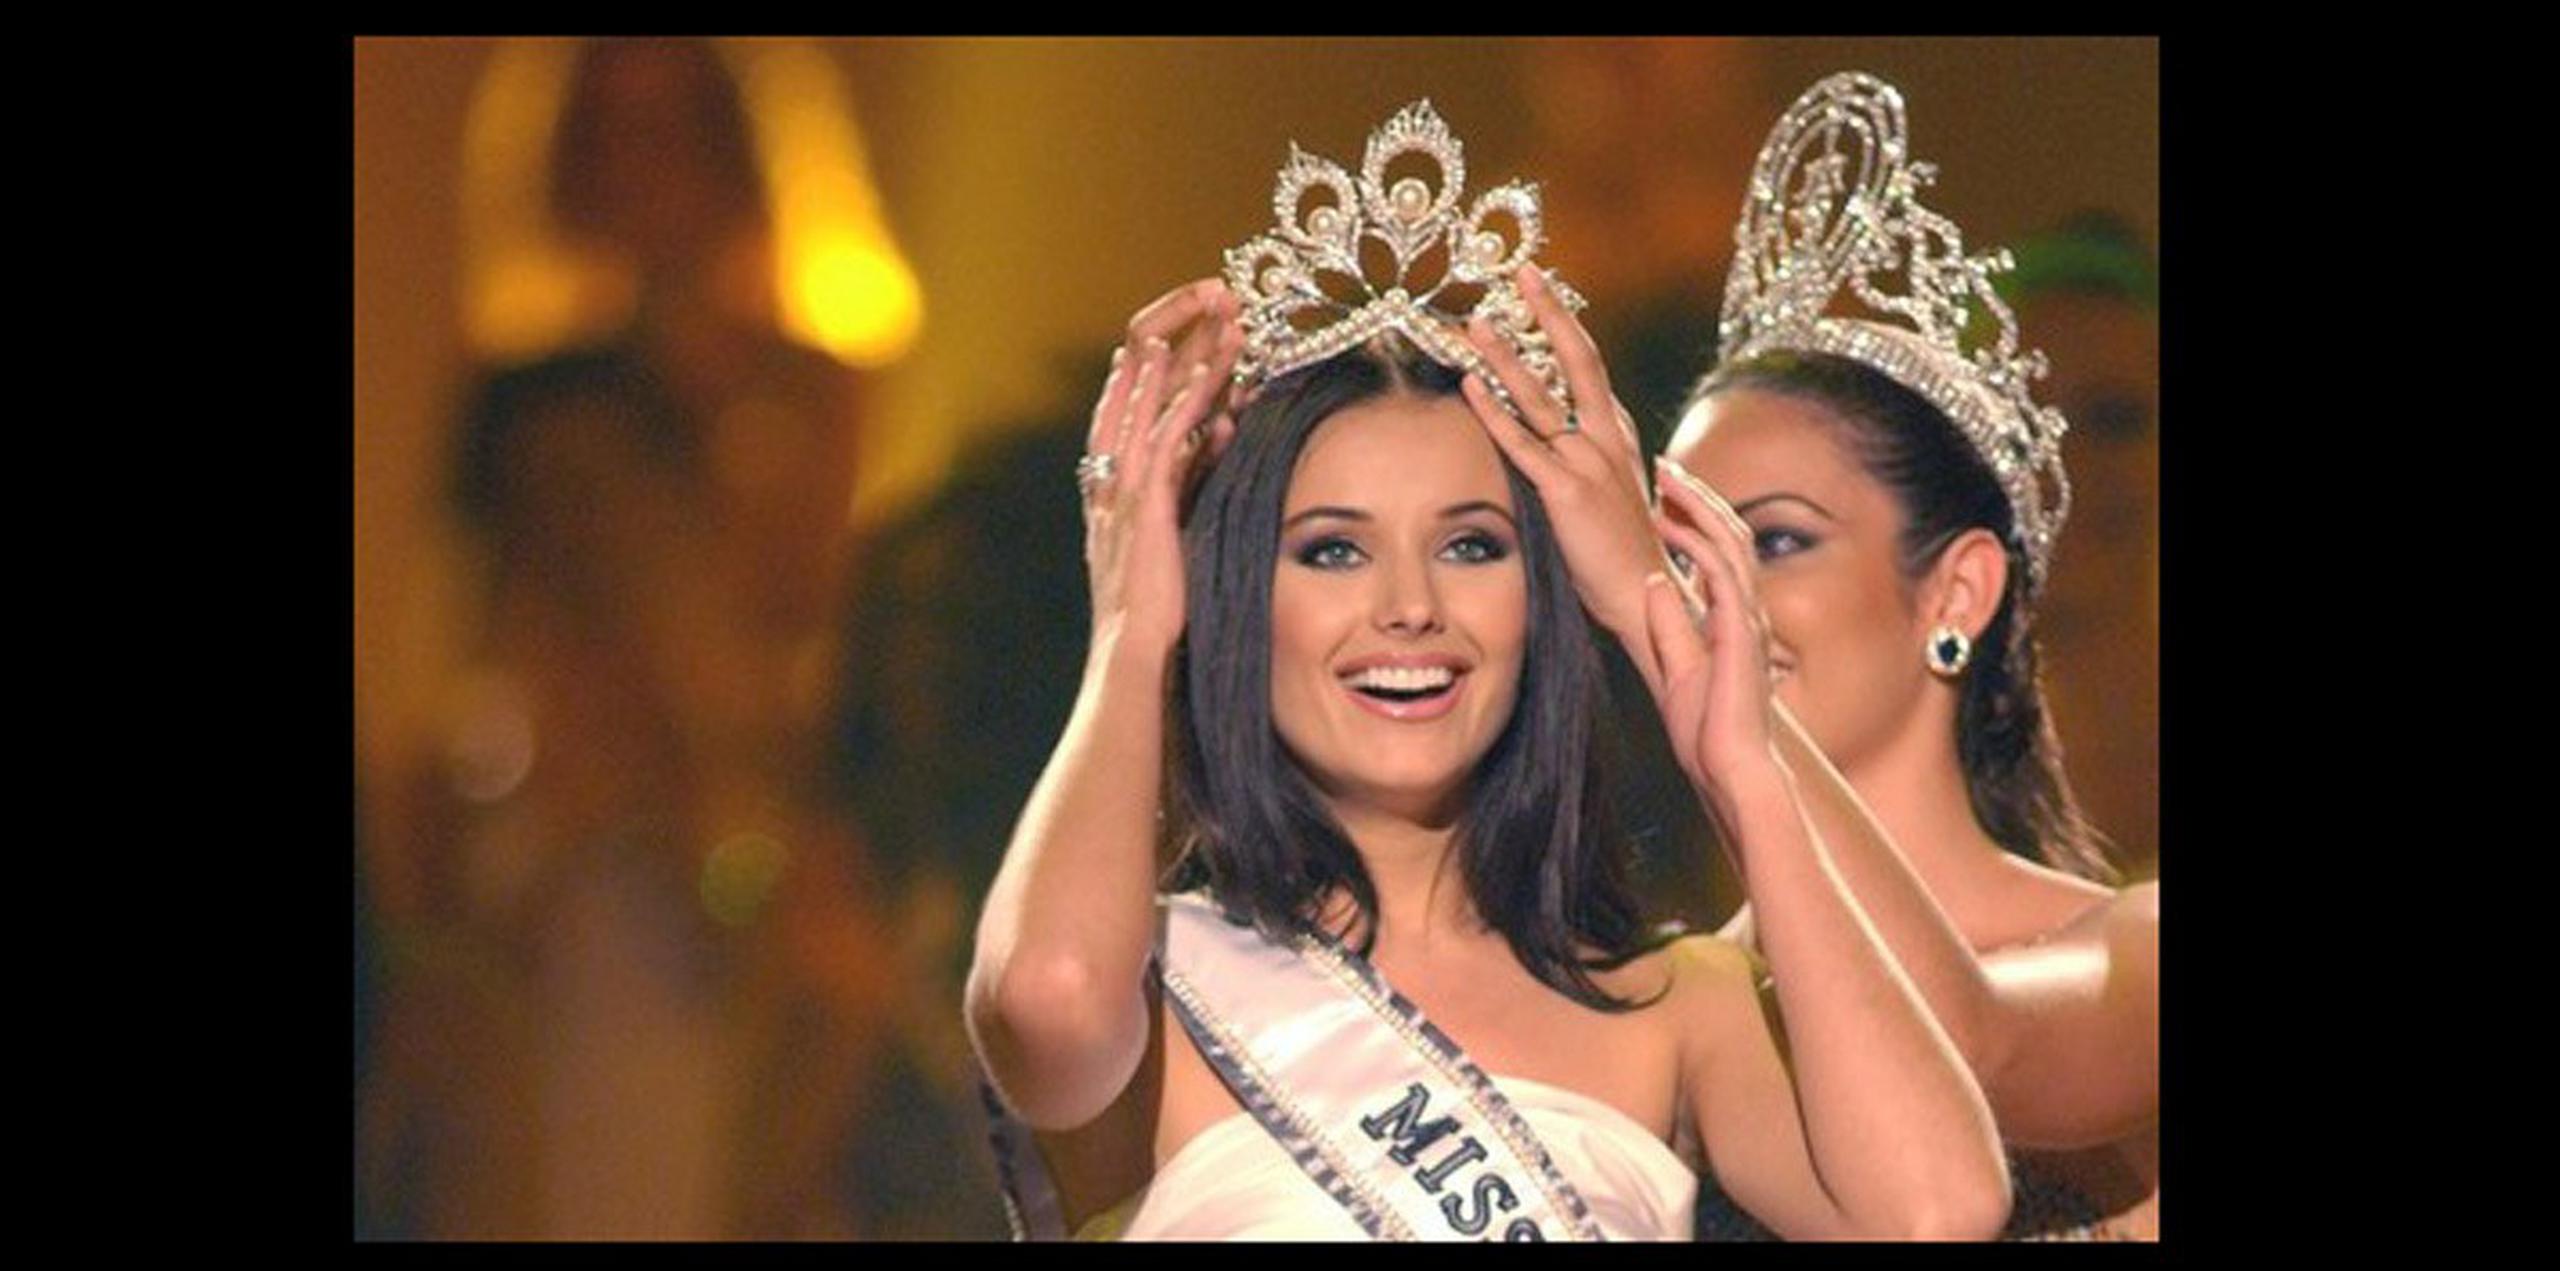 Oxana Fedorova, Miss Universo 2002. Se rumoró que estaba embarazada. Fedorova negó los rumores y dijo que renunció a su corona por razones personales. Oficialmente, fue despojada por no cumplir con las obligaciones. (Archivo)
